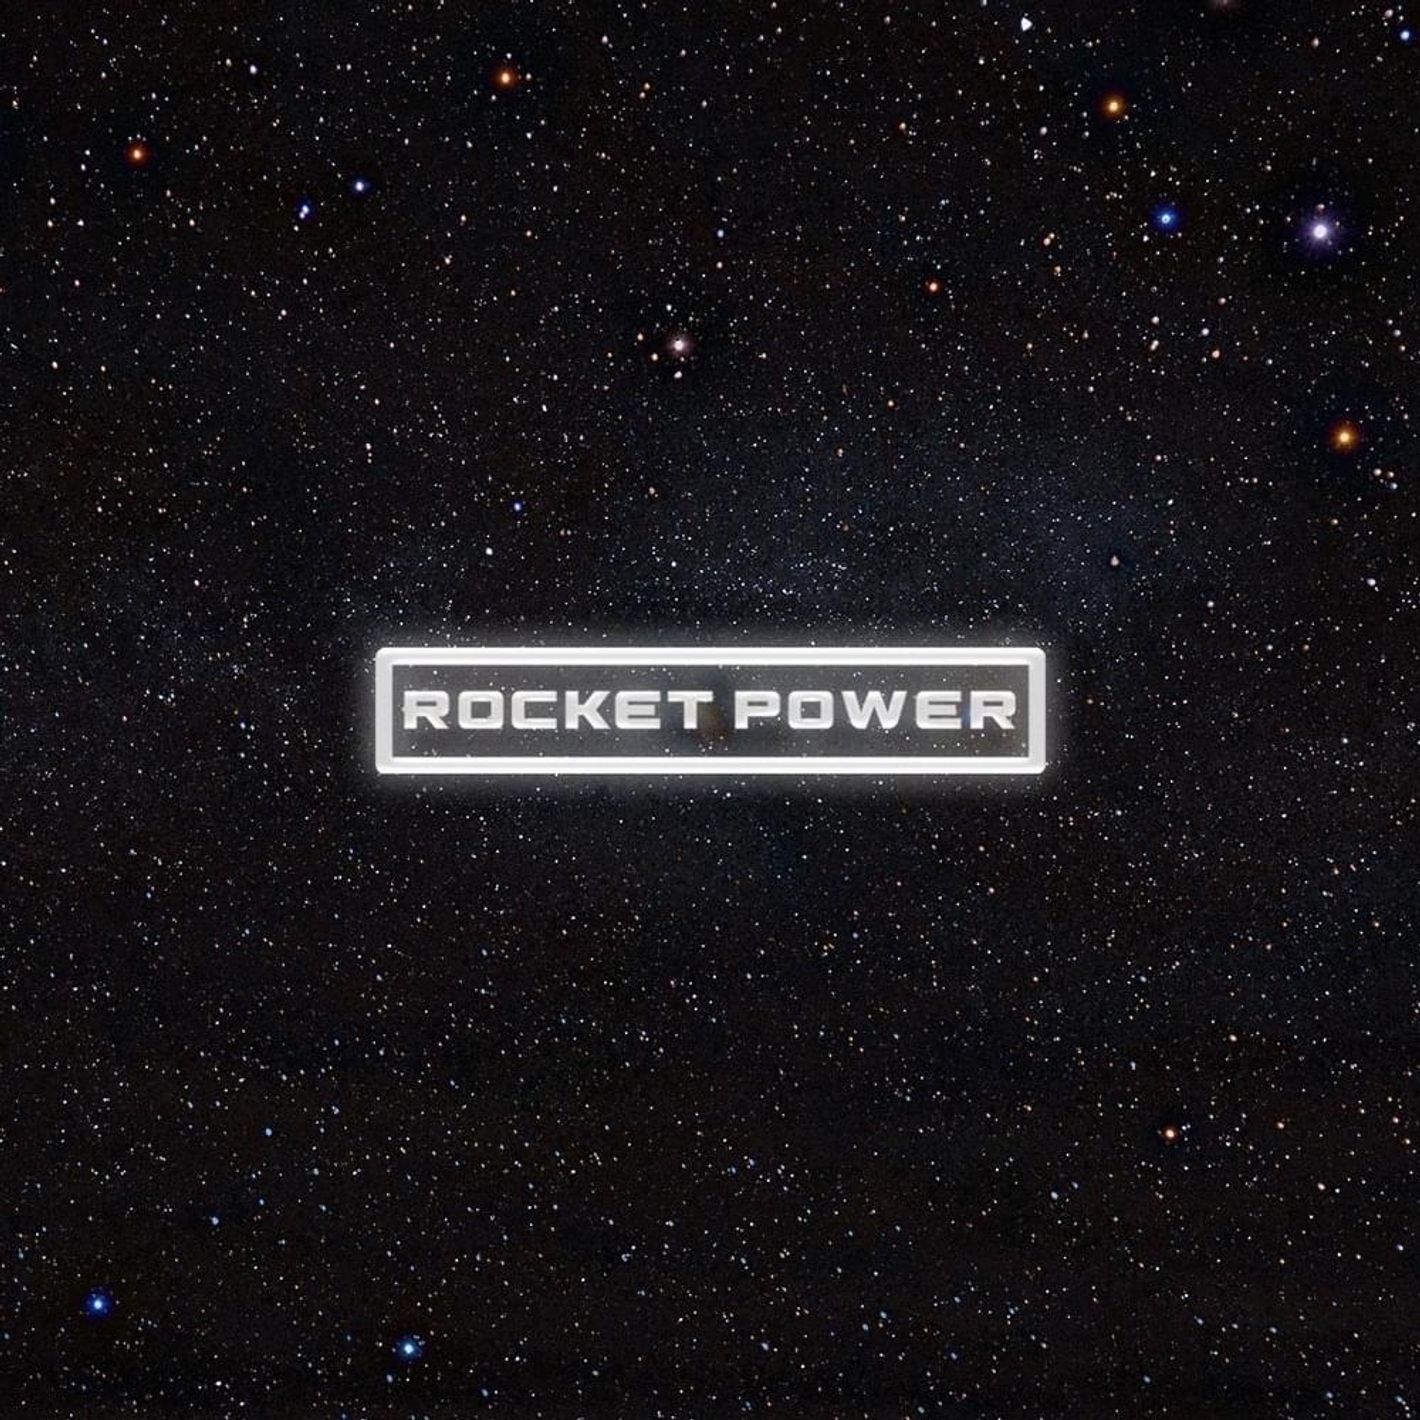 Quavo Rocket Power Album Download Leak MP3 ZIP Files